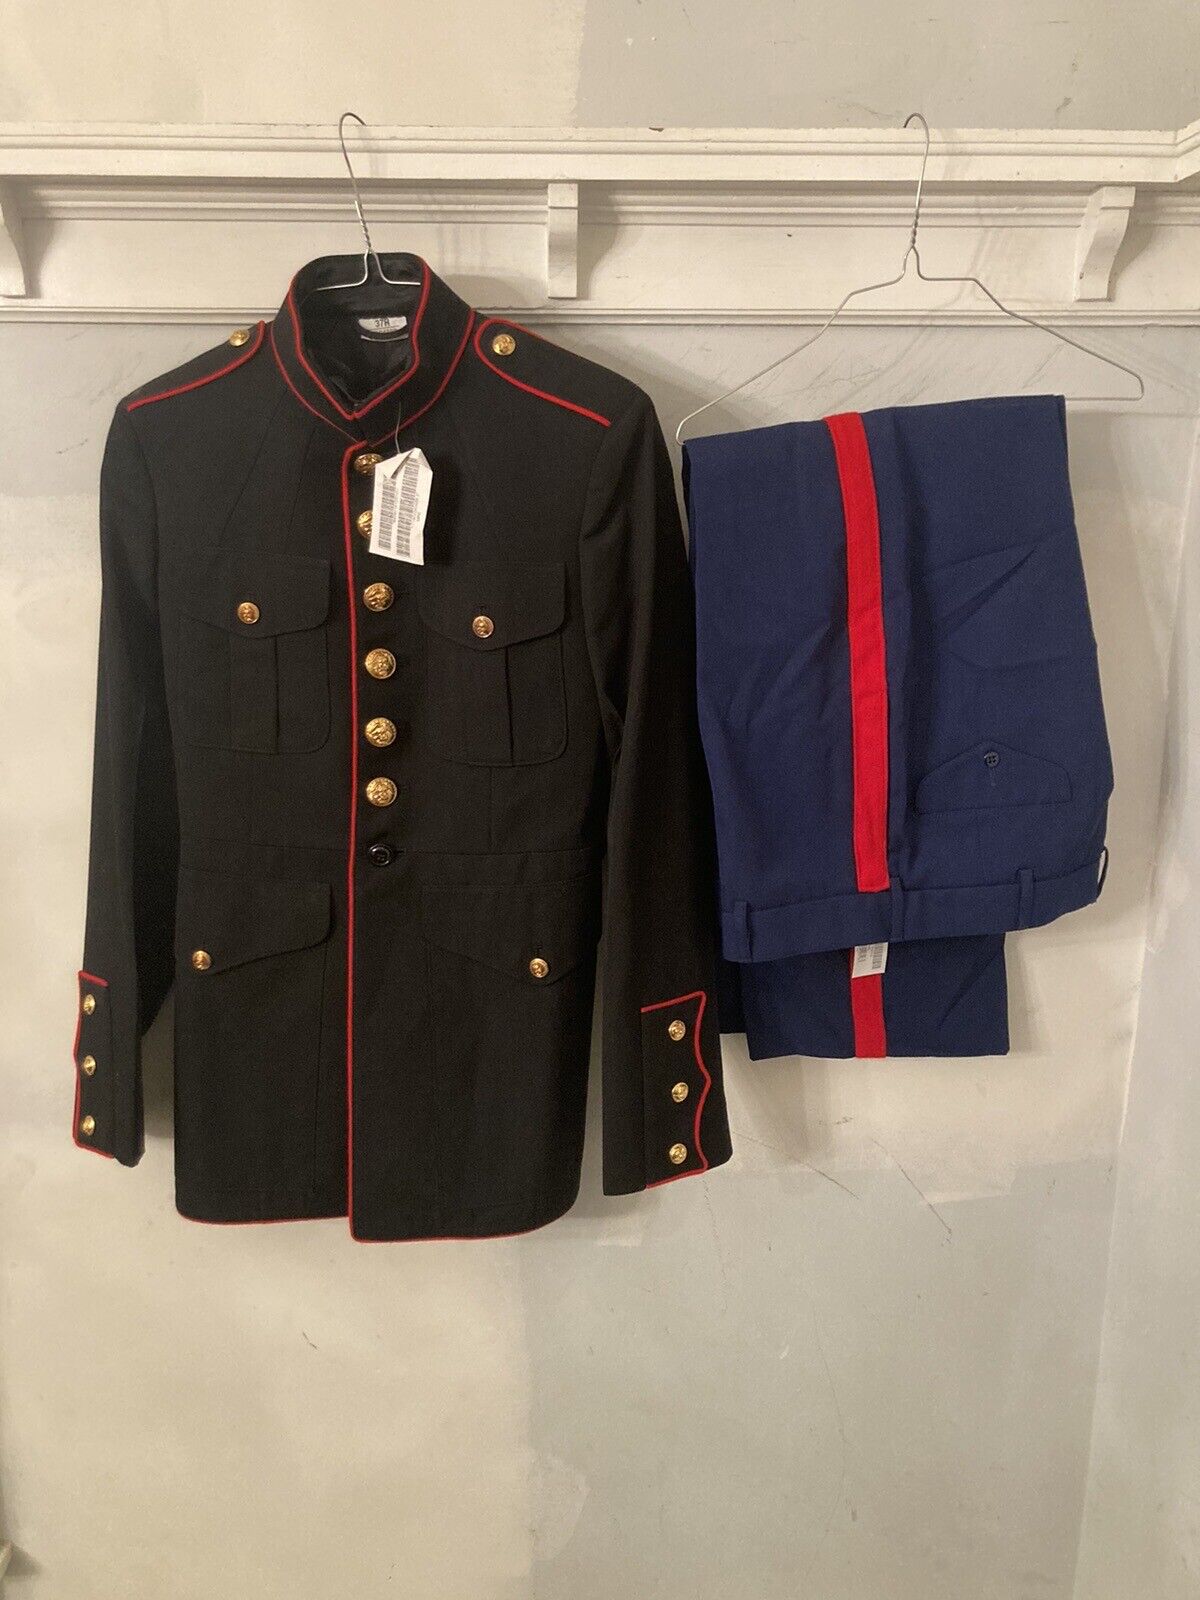 USMC US Marine Corps Dress Blues Uniform Mens Coat 37R Pants 36x30 Authentic